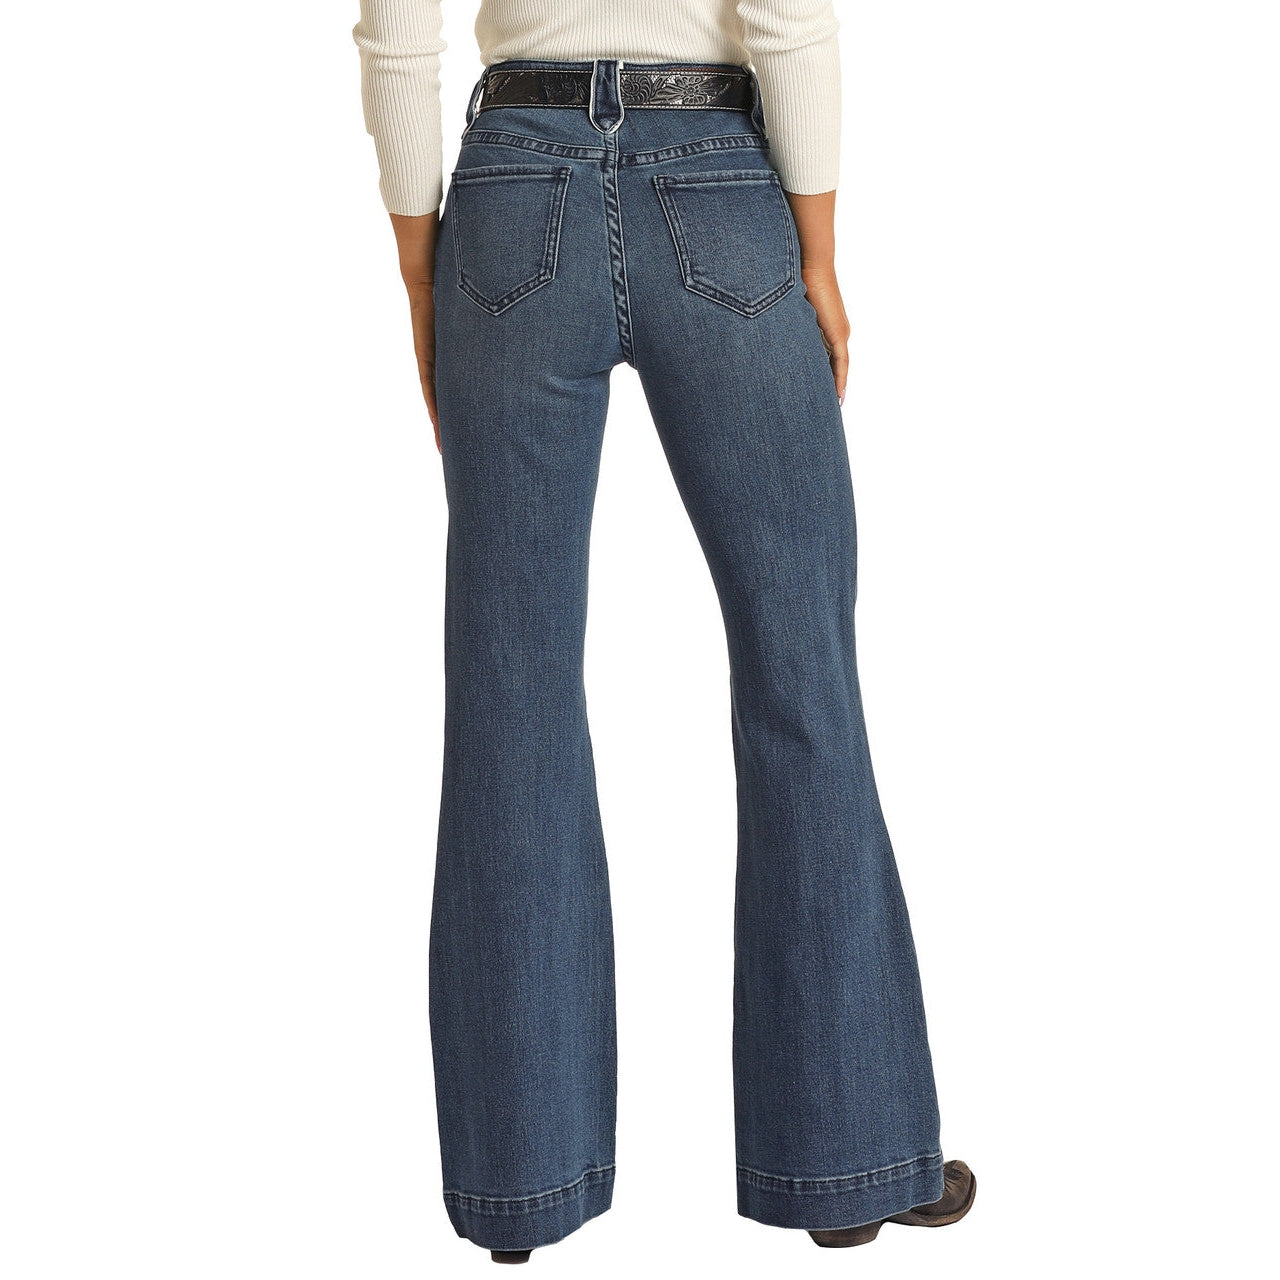 Super High Waist Women's Jeans Buttons Design Skinny Vaqueros Spring Denim  Trousers Korean Fashion Pencil Pants Cowboy Capris